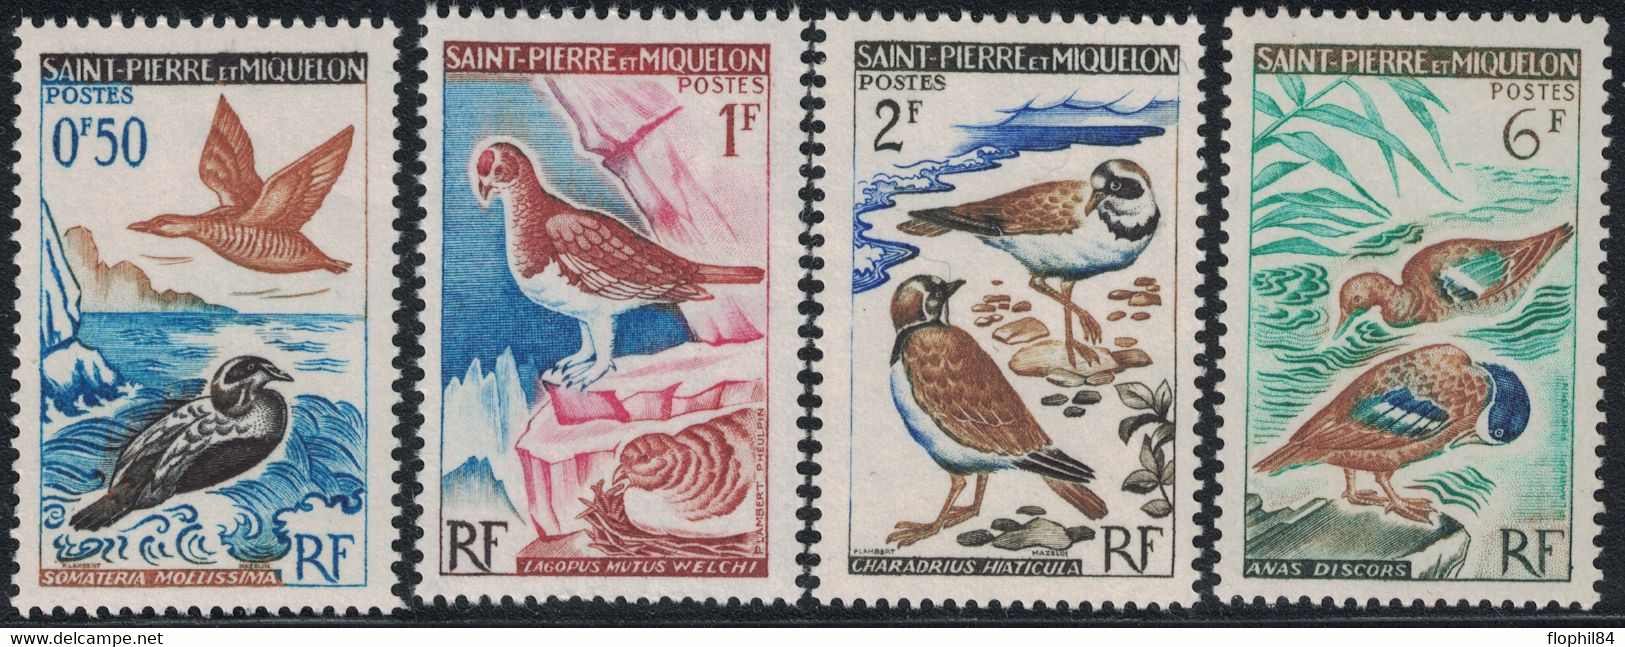 ST PIERRE ET MIQUELON - N°364 ET 367 - NEUF SANS TRACE DE CHARNIERE - COTE 8€80 - YT 2015. - Unused Stamps